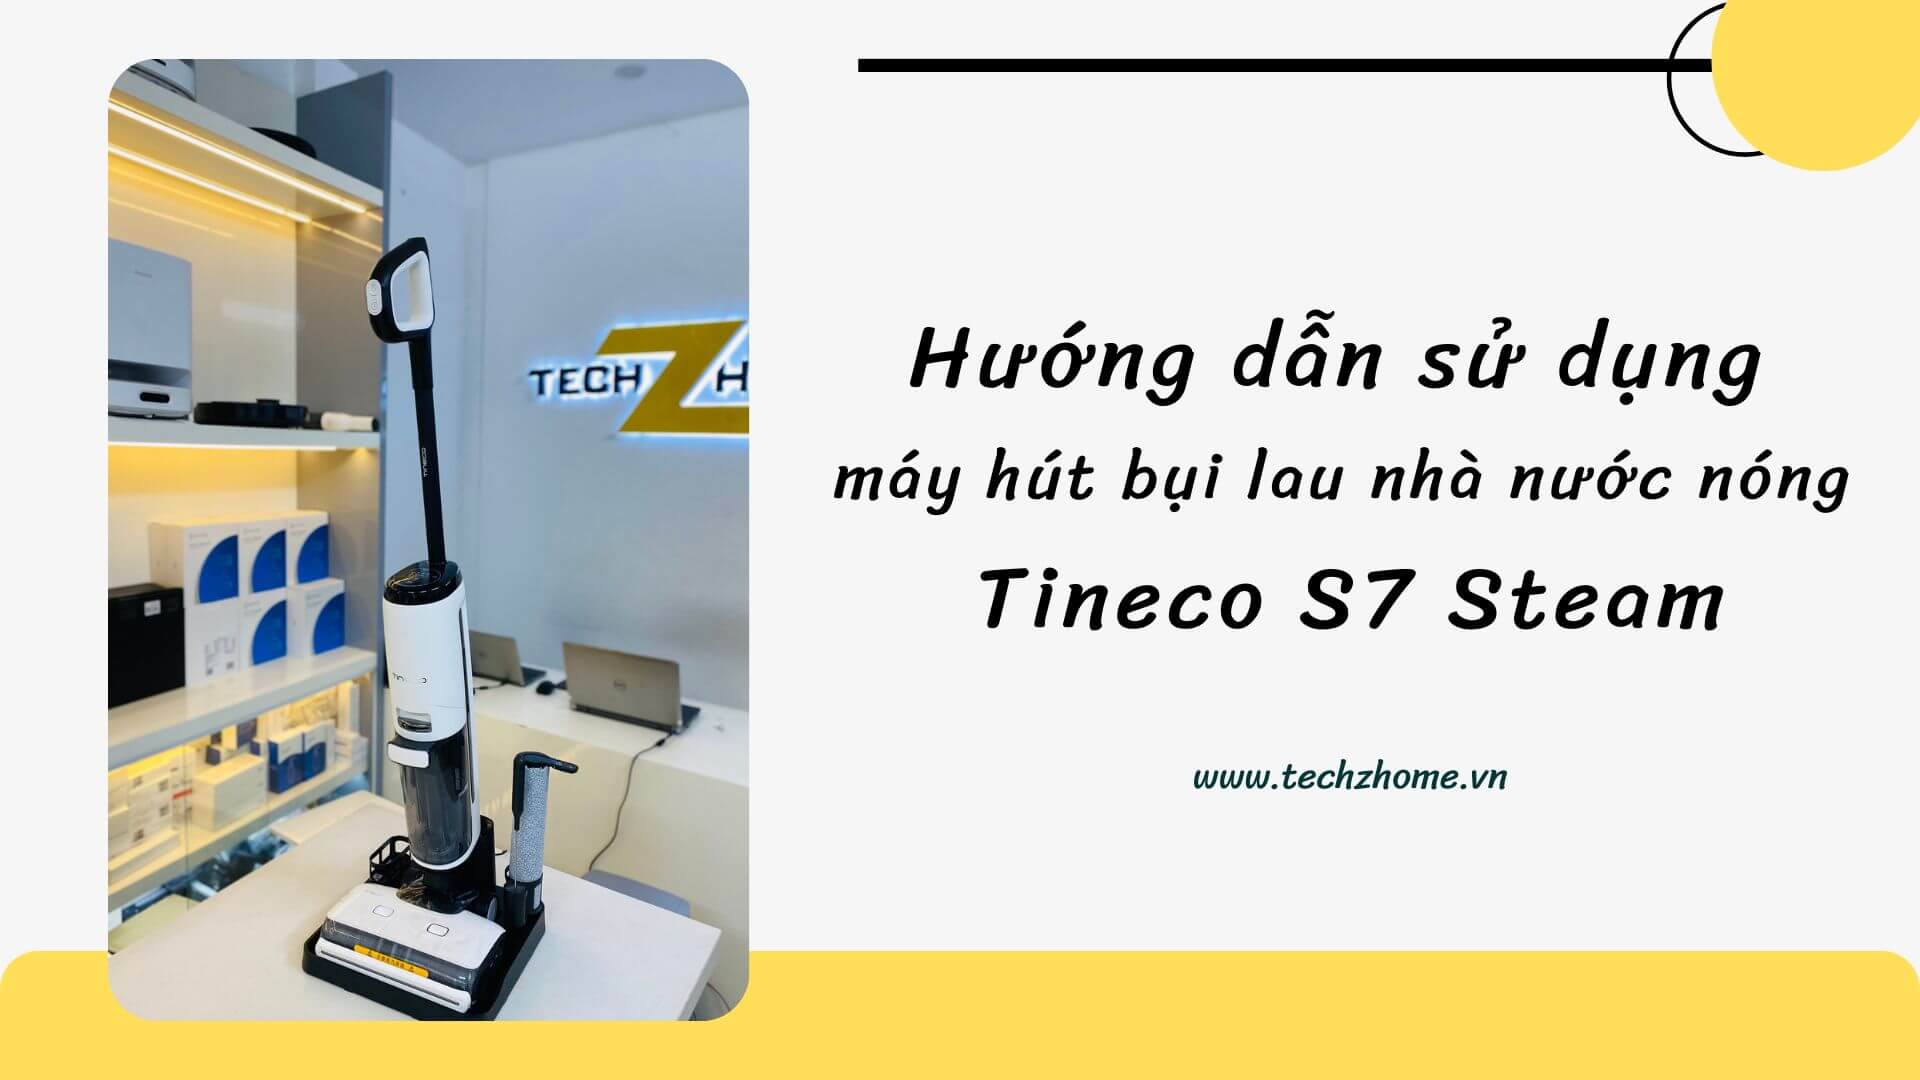 Hướng dẫn sử dụng máy hút bụi lau nhà nước nóng Tineco S7 Steam